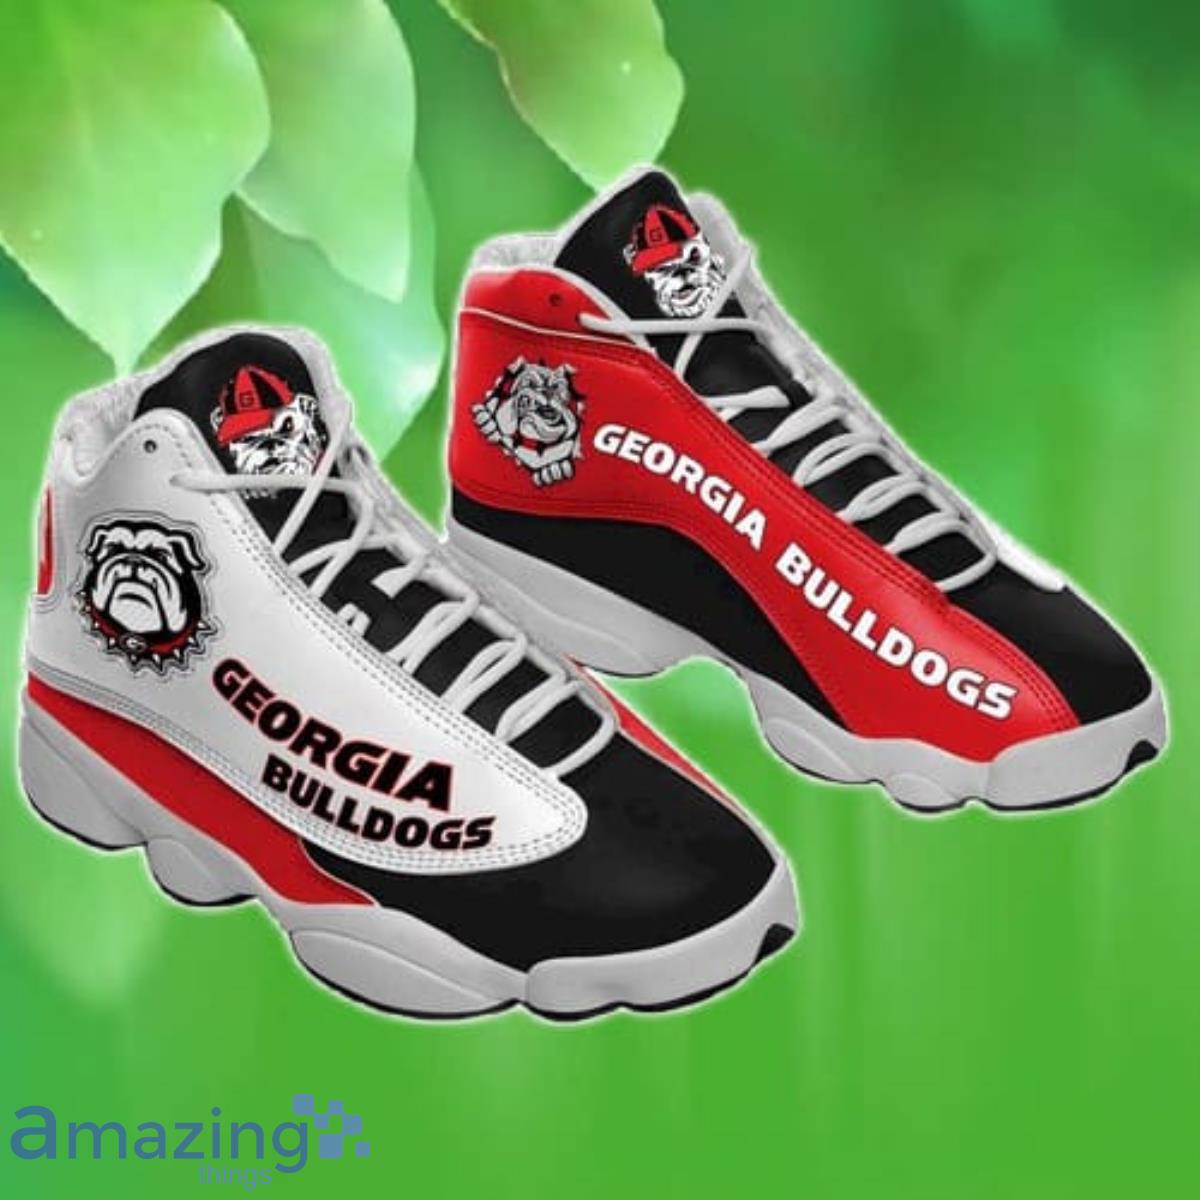 Georgia Bulldogs Football Team Custom Tennis Shoes Air Jordan 13 Sneaker Product Photo 1